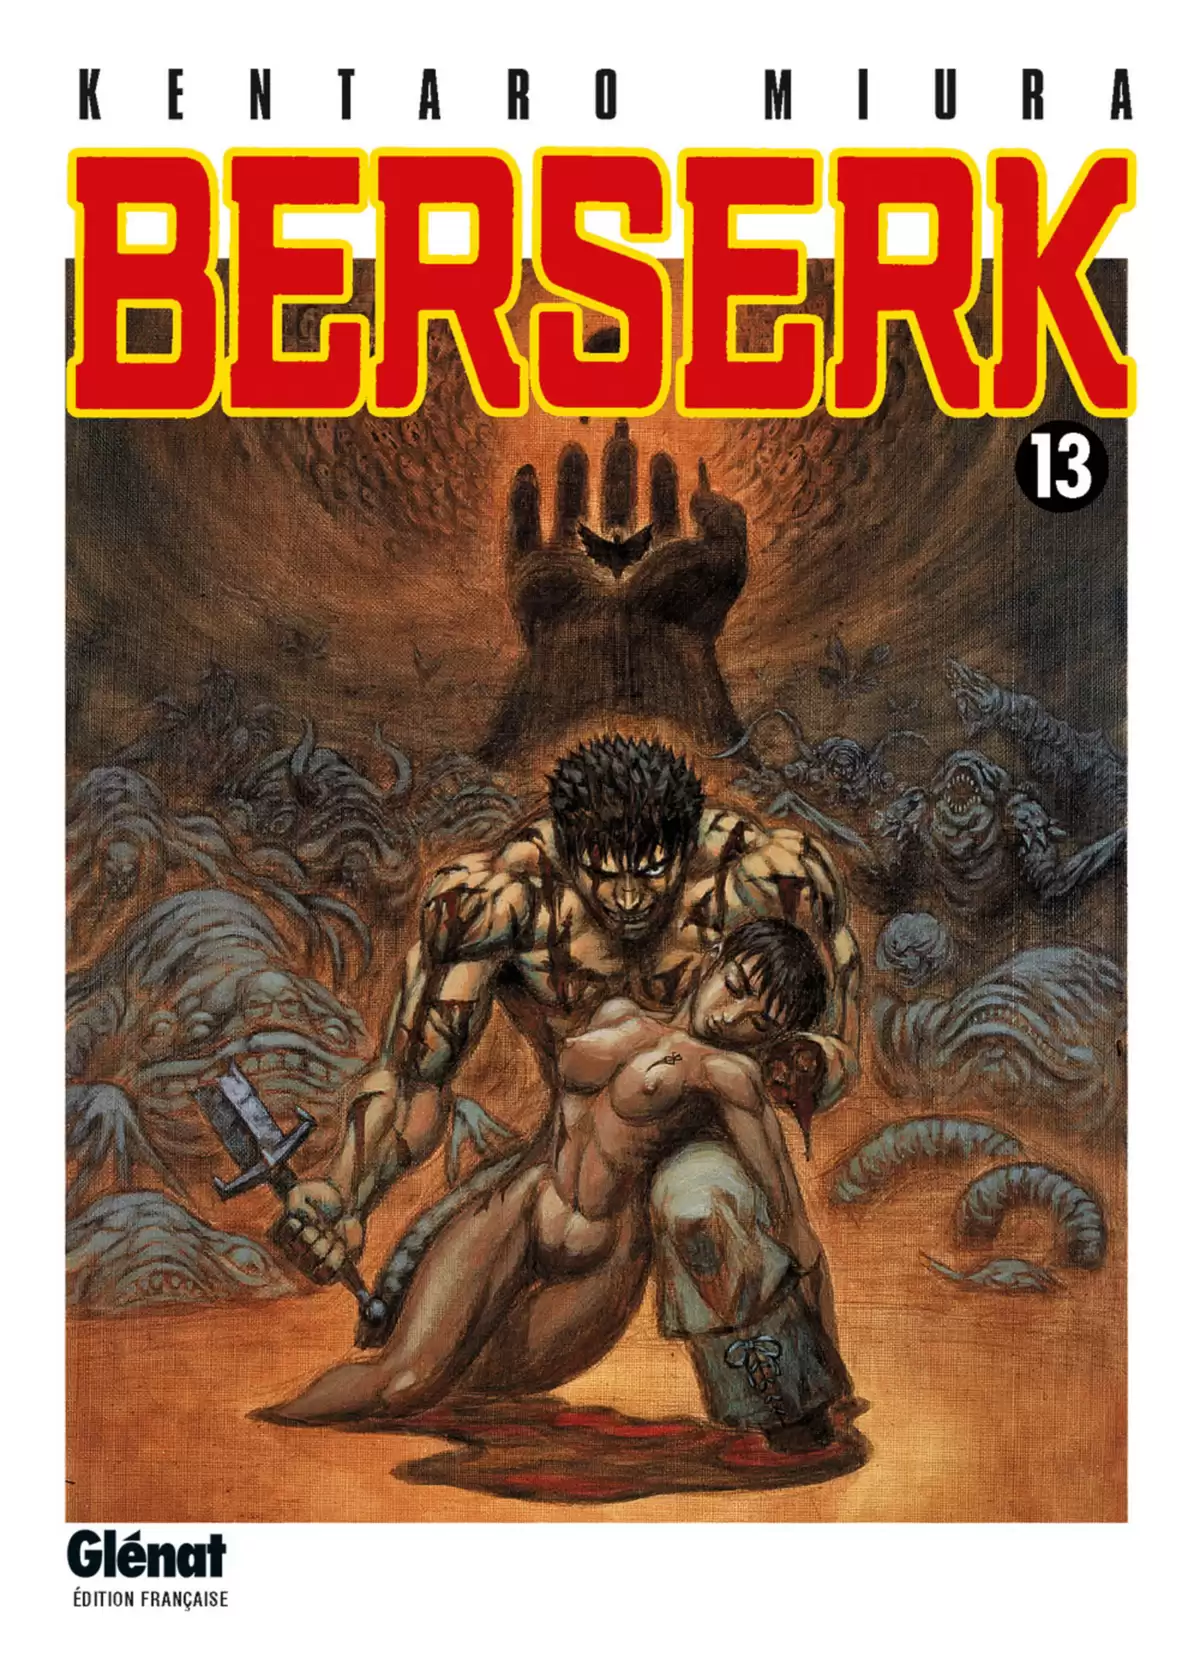 Berserk Volume 13 page 1